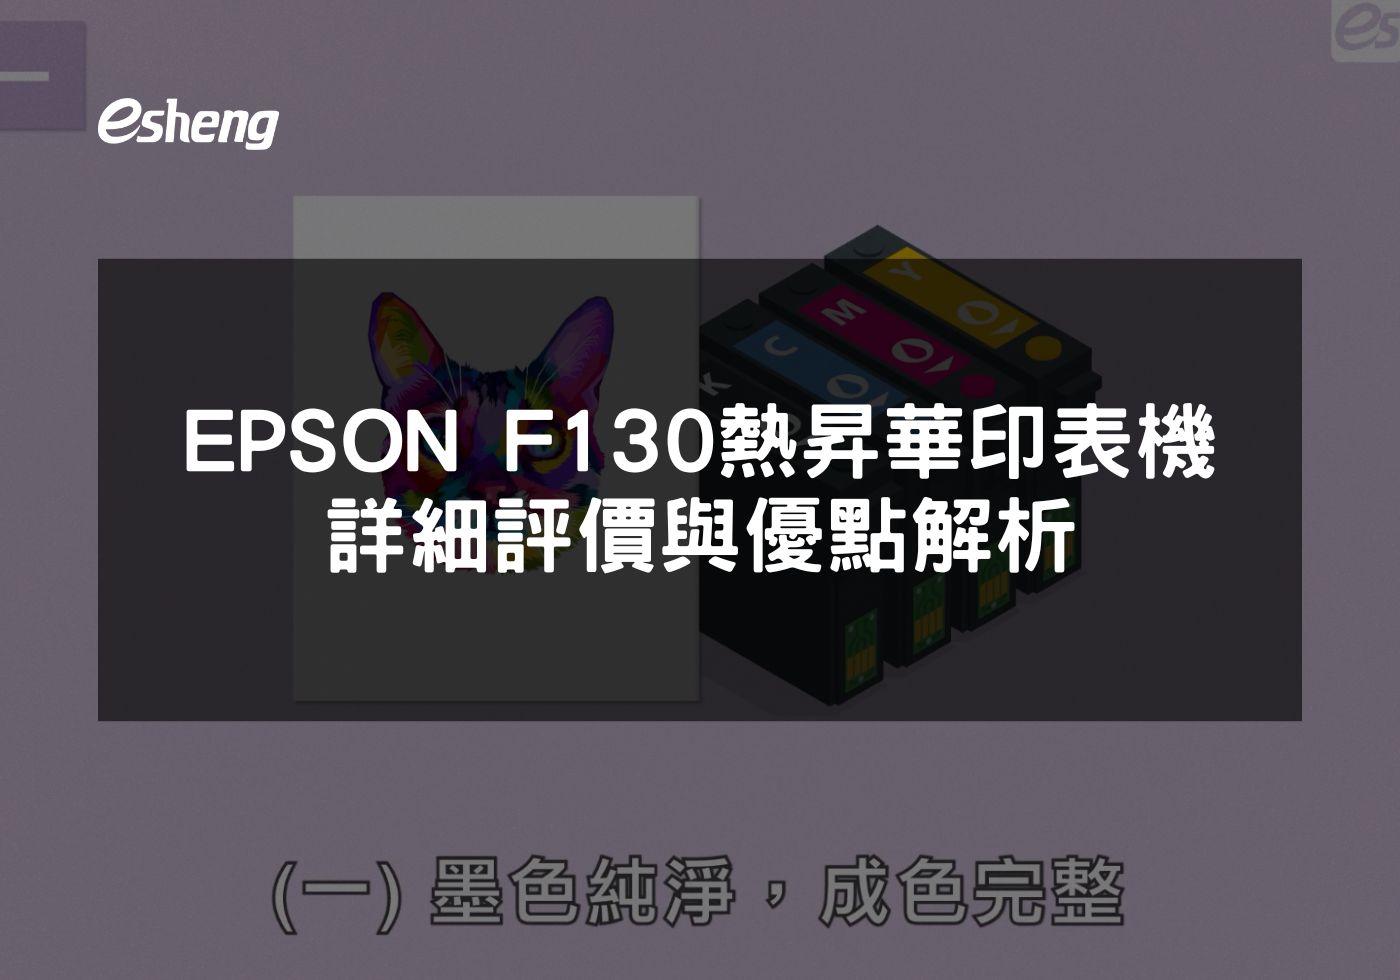 閱讀更多文章 EPSON F130熱昇華印表機詳細評價與優點解析